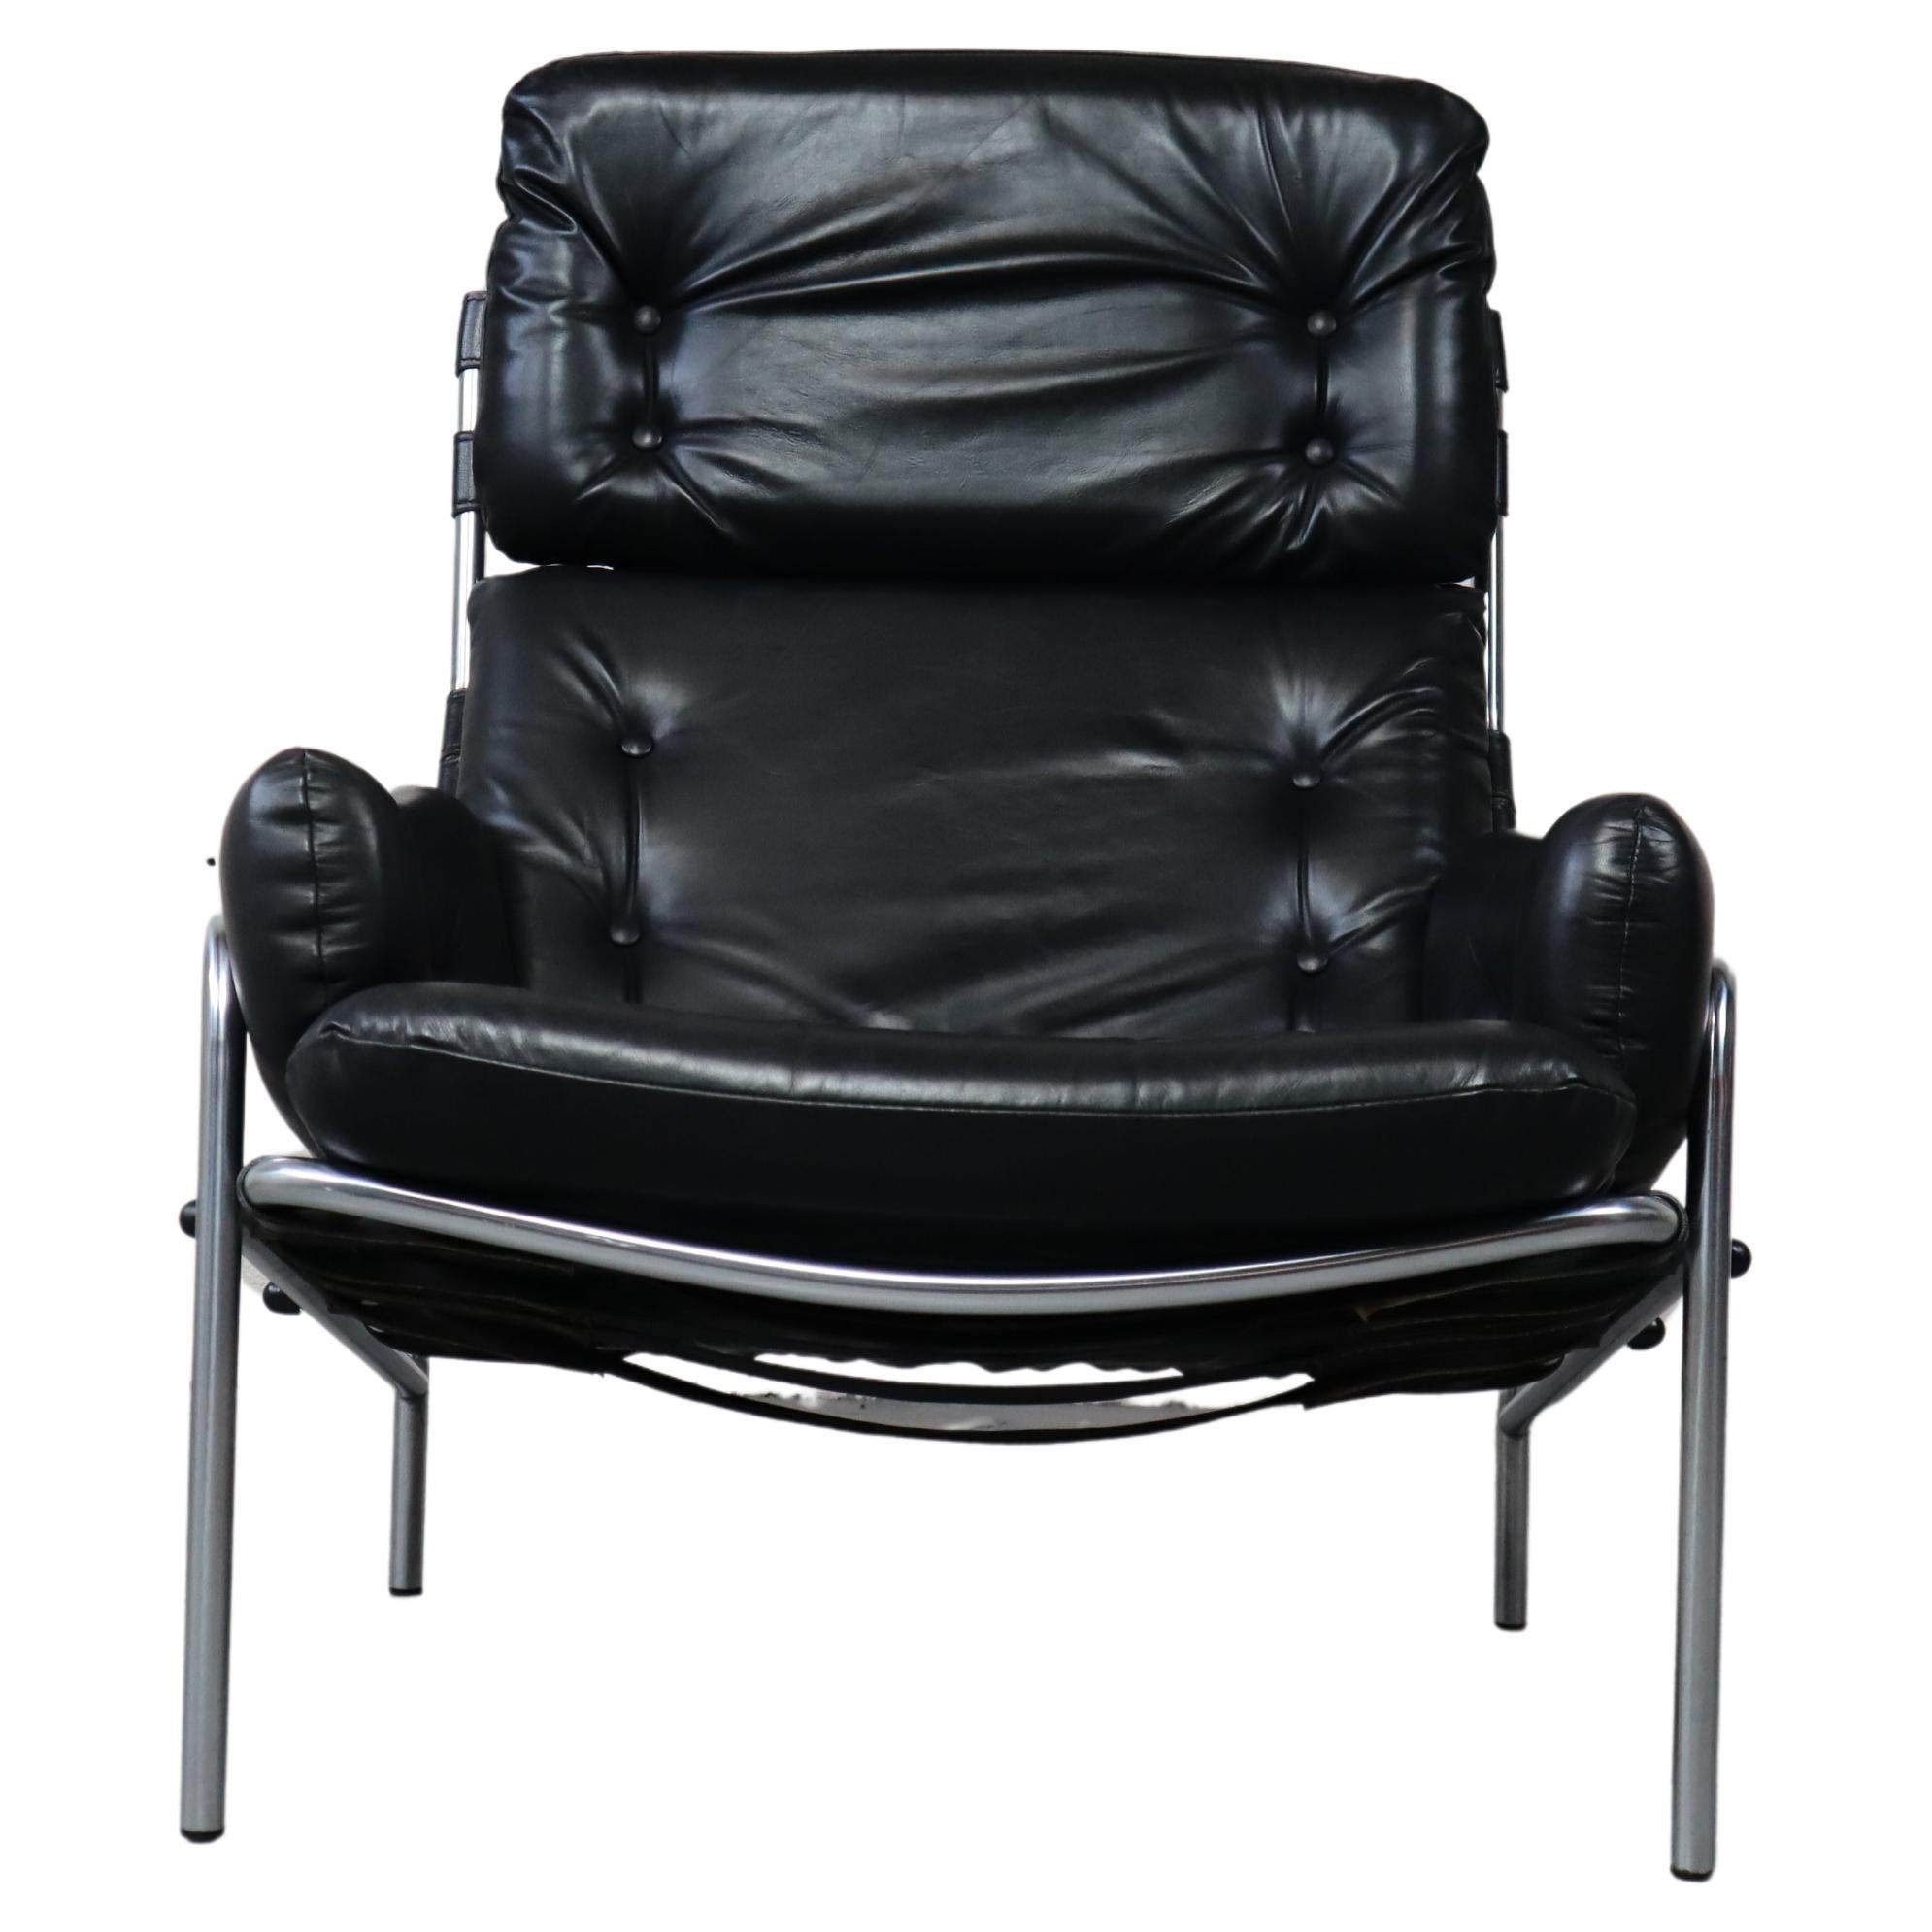 Nagoya SZ09 black lounge chair by Martin Visser for 't Spectrum Netherlands